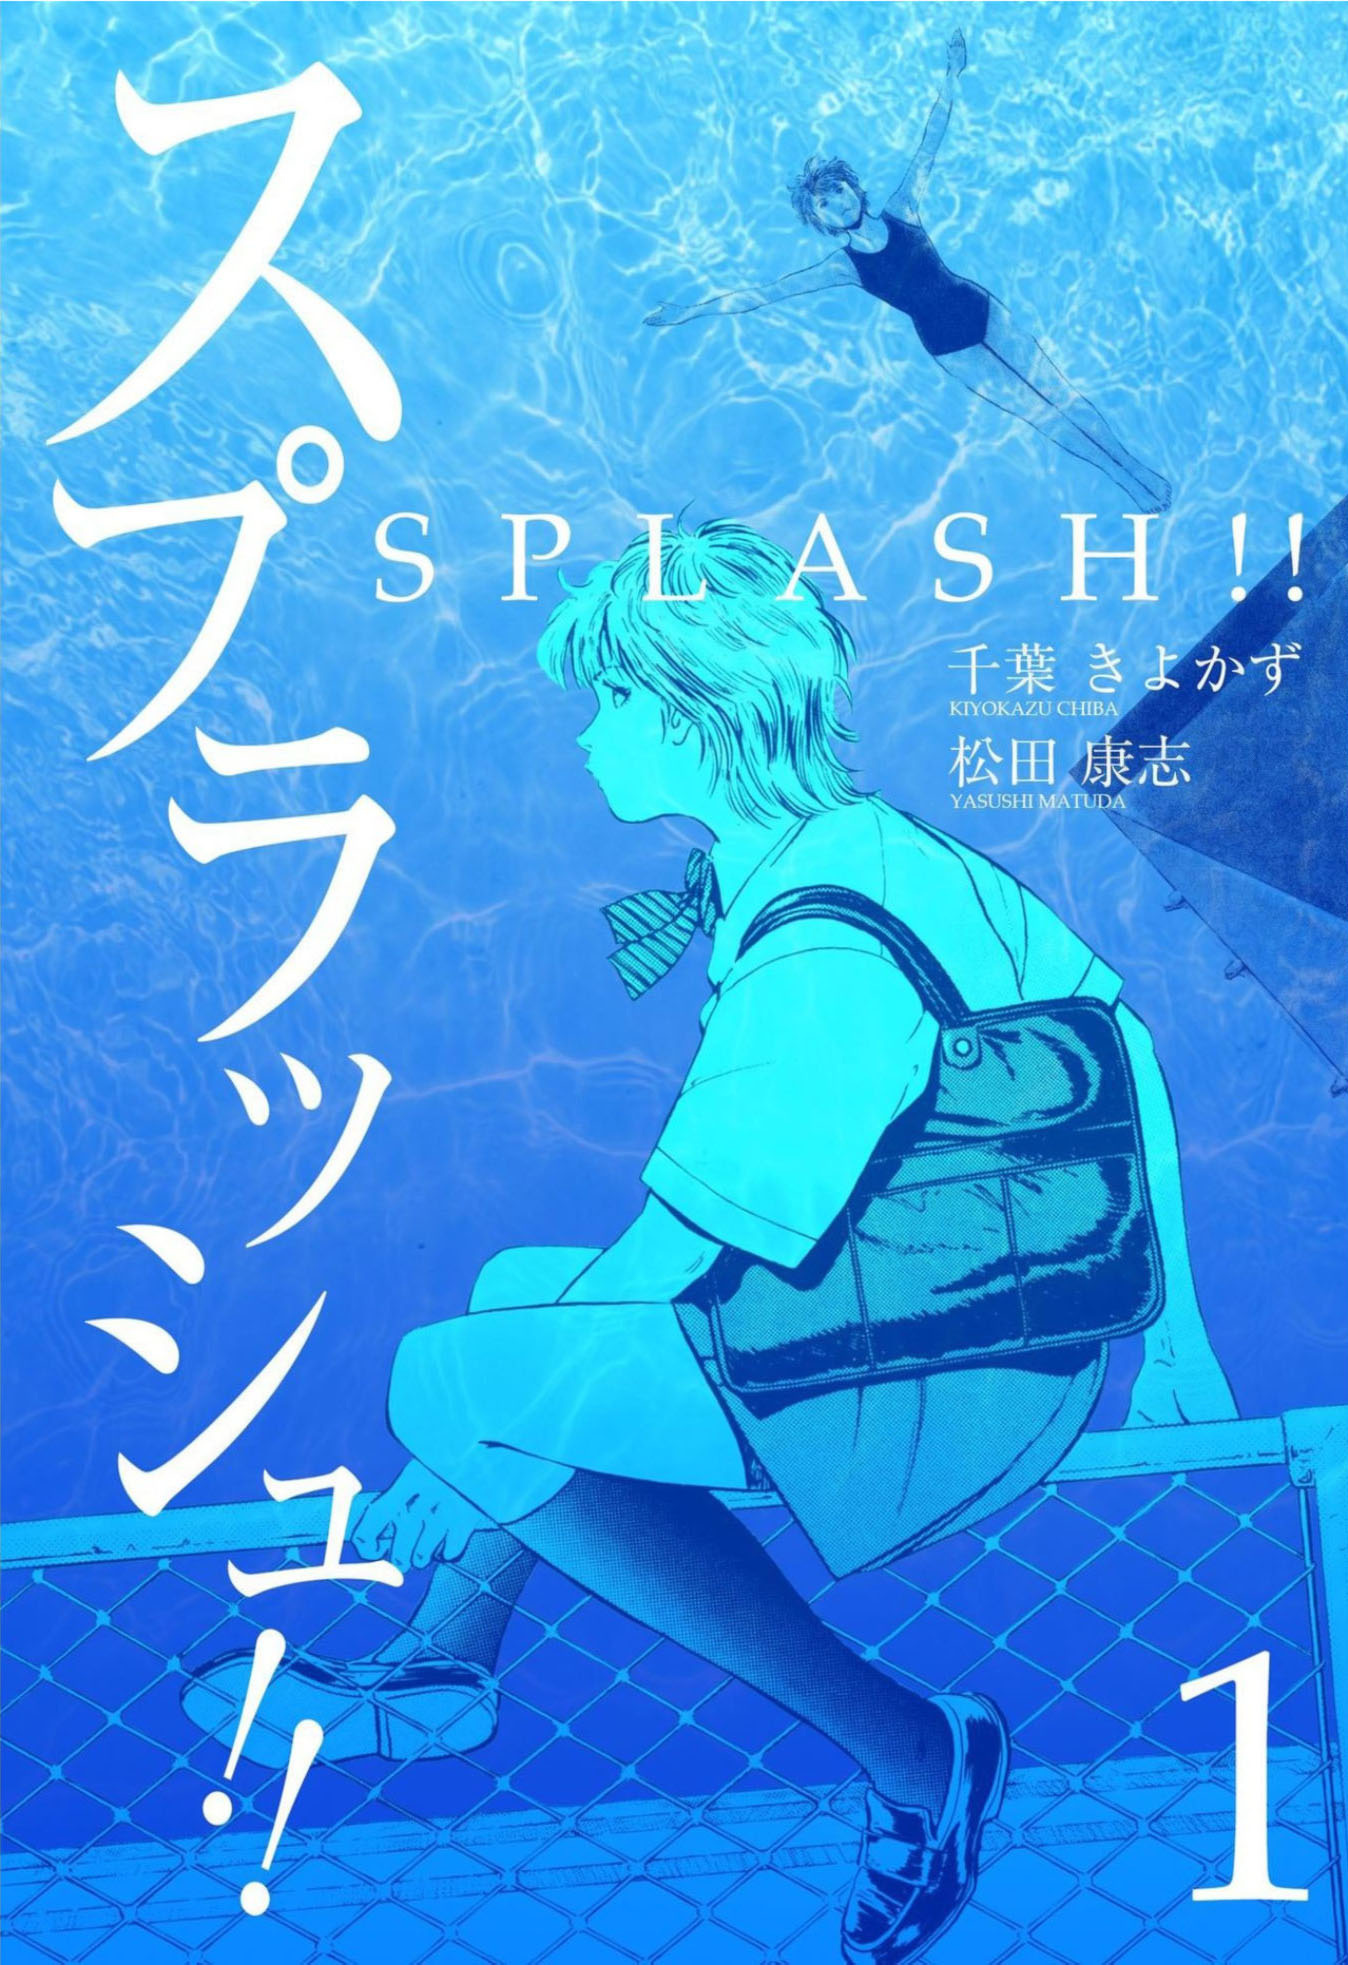 Splash!!